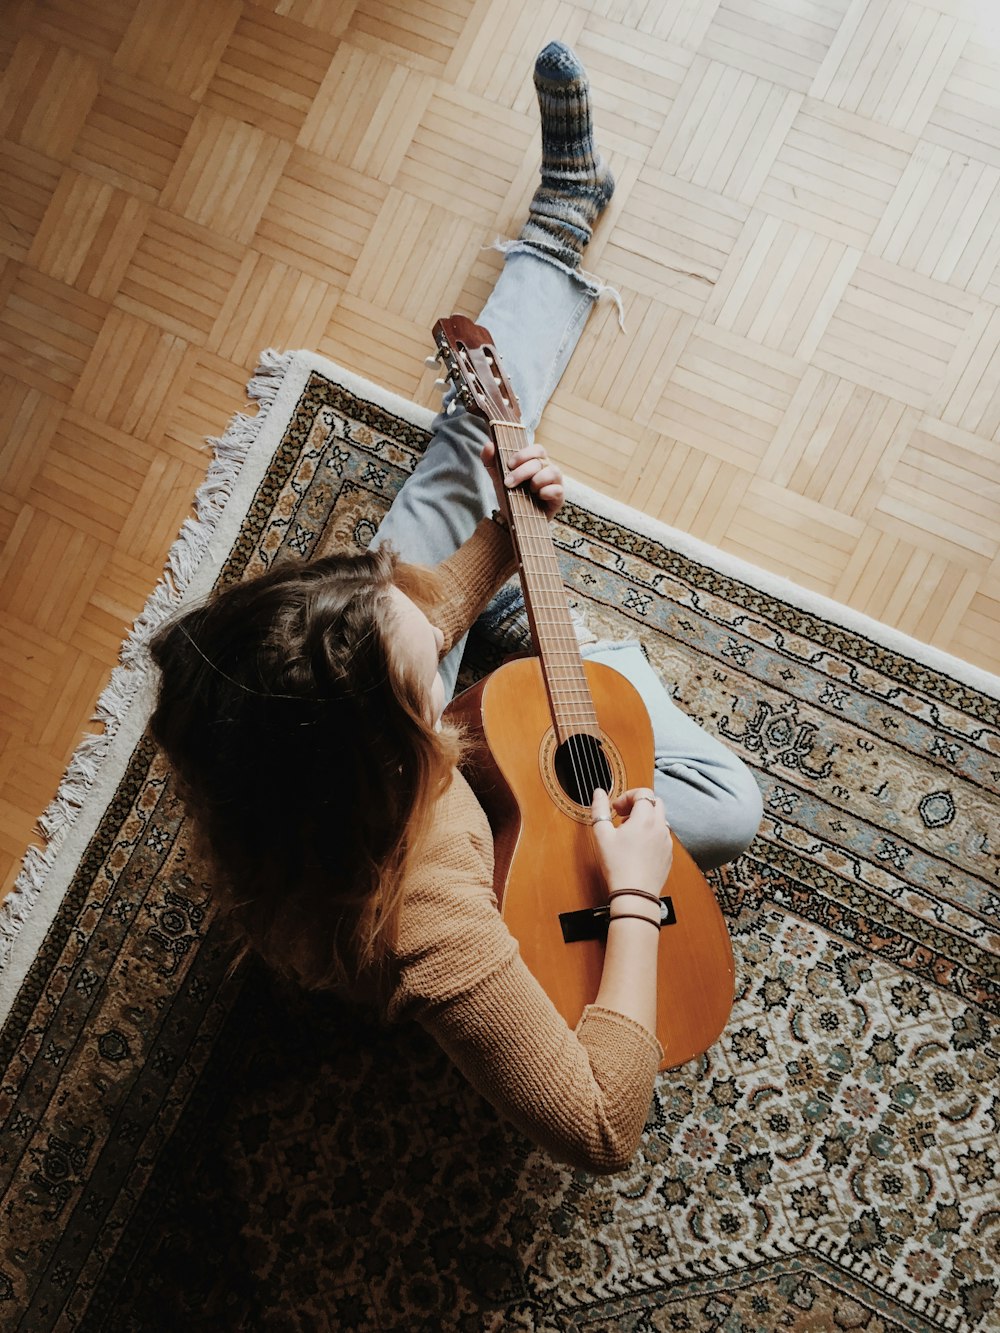 Fotos de Triste mulher jovem sentada com guitarra nas mãos